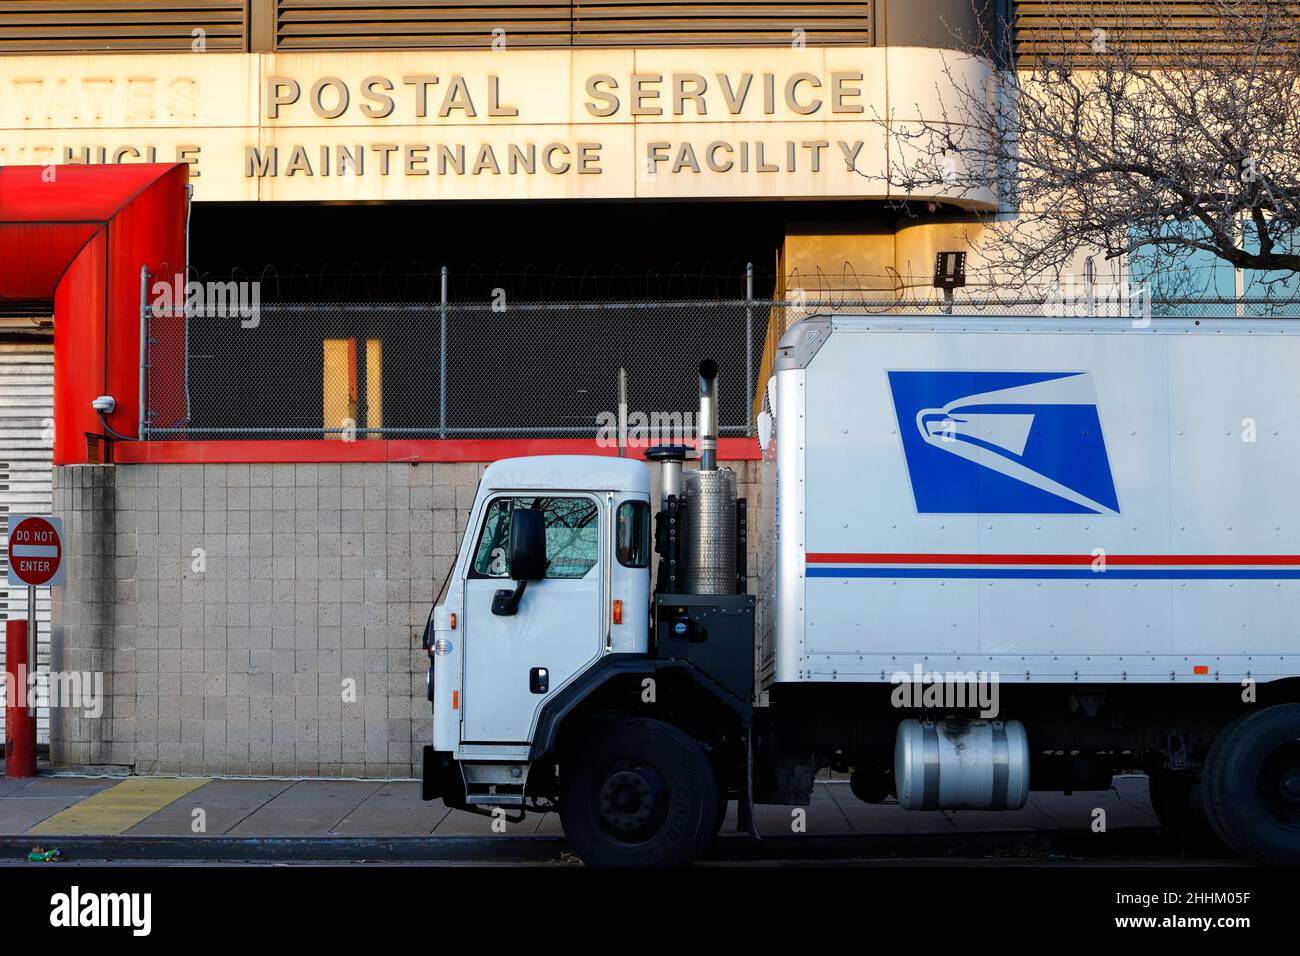 Postal Service Vehicle Maintenance Facility, New York, un camion postale fuori da un deposito di manutenzione camion. Foto Stock